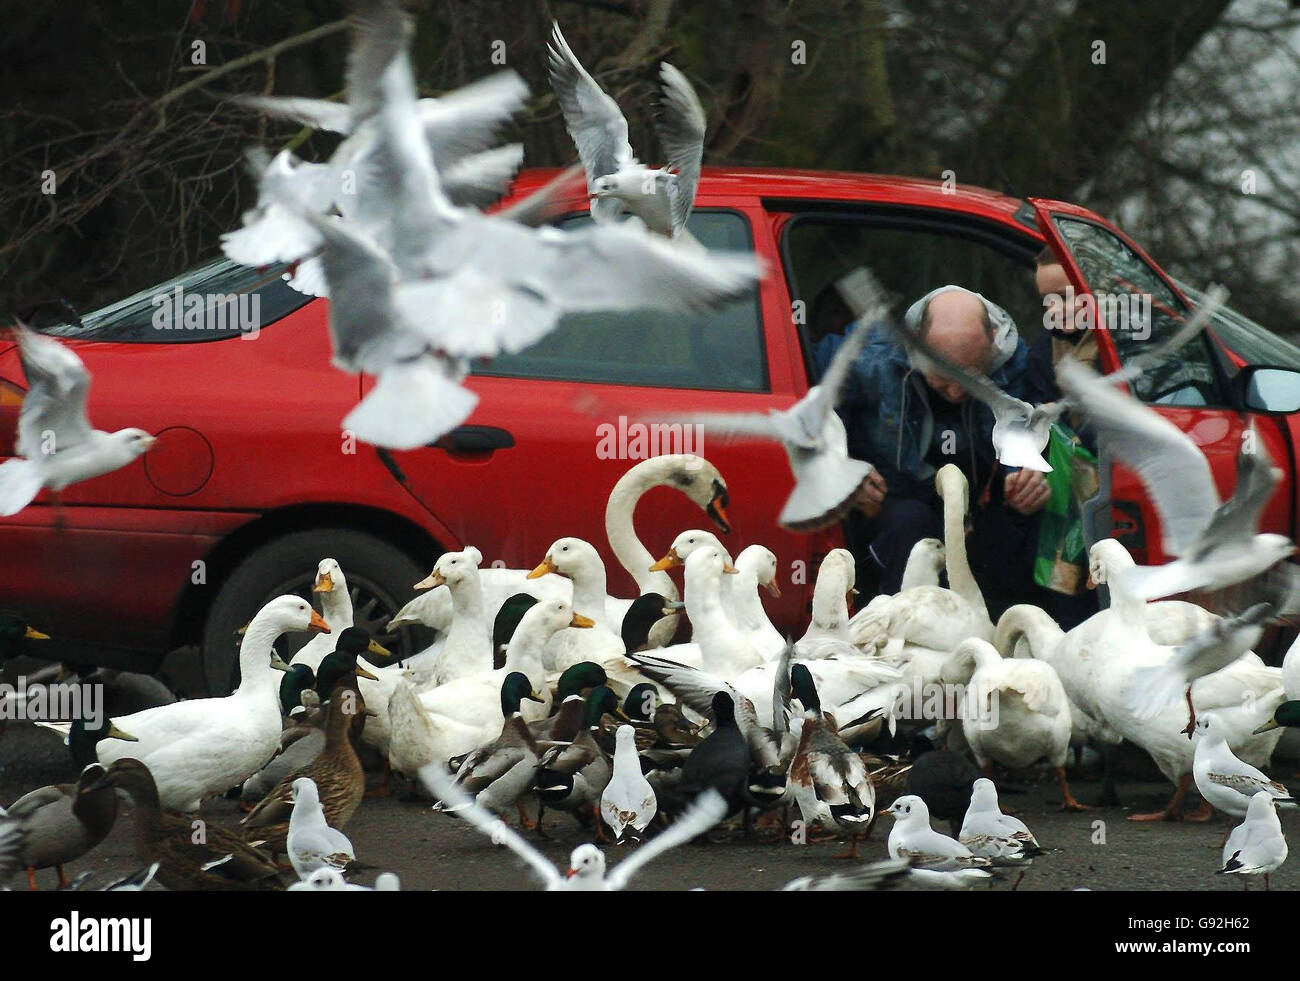 Con la propagación de la gripe aviar en Turquía, el público continúa alimentando aves silvestres en santuarios como el sitio RSPB en Fairburn Ens cerca de Leeds, con cisnes, muchos tipos de patos y gansos, así como otras aves migratorias disfrutando de su comida. Foto de stock